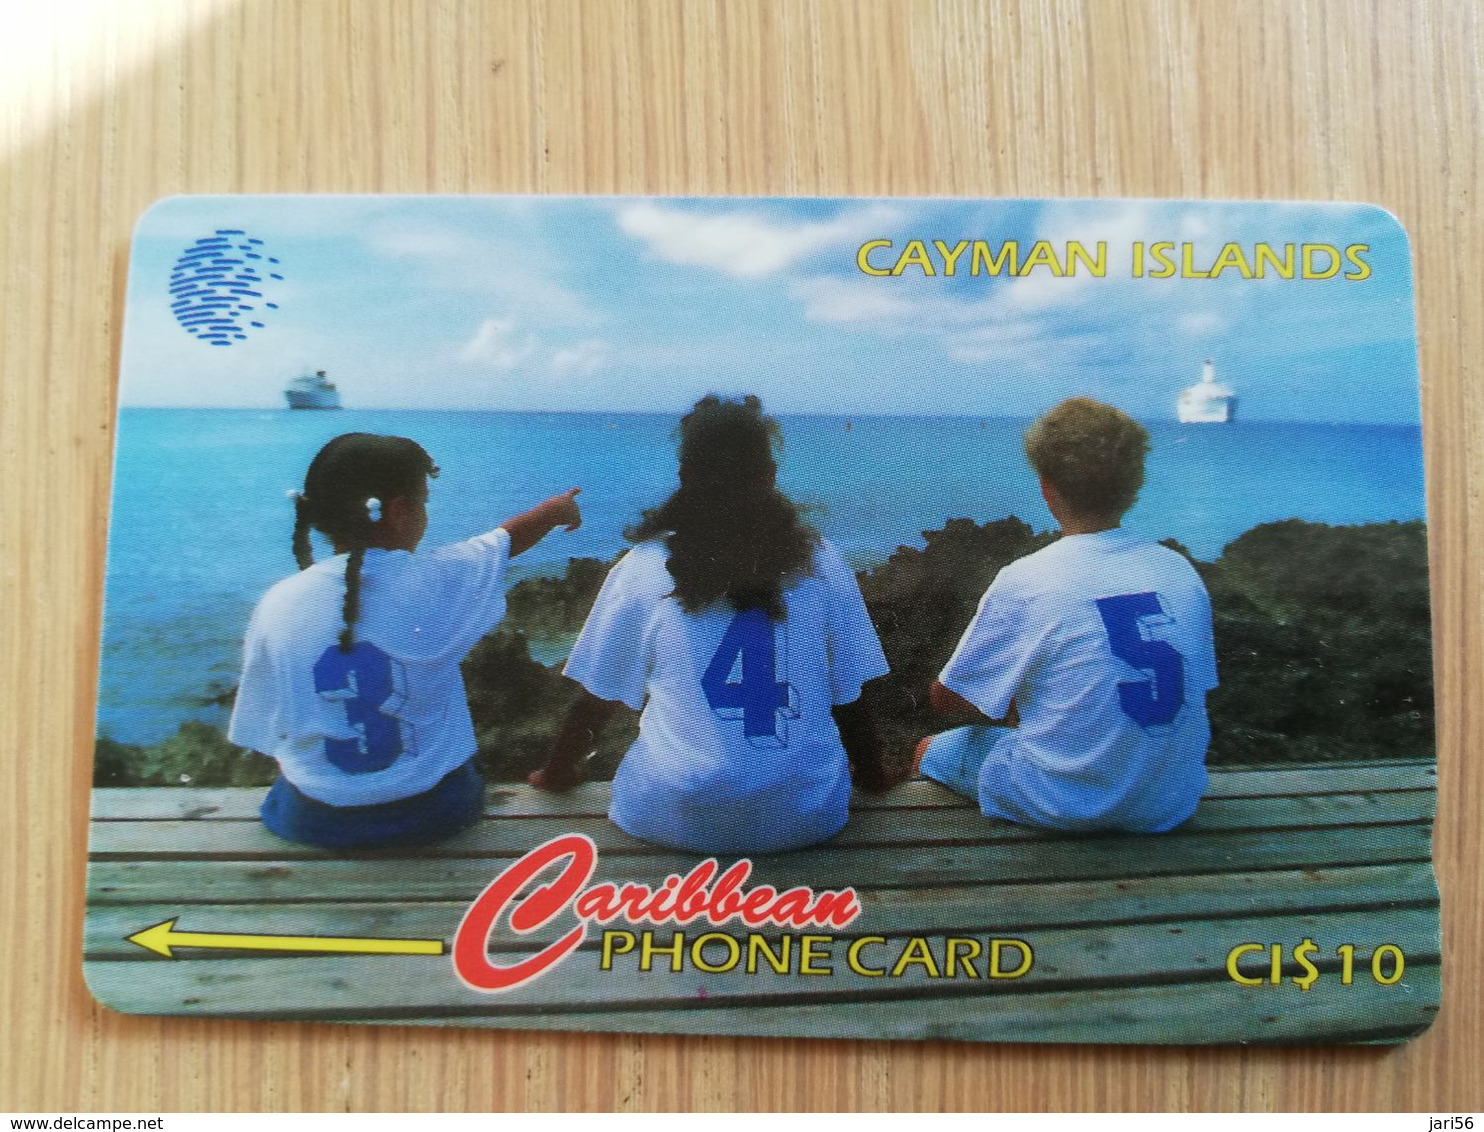 CAYMAN ISLANDS  CI $ 10,-  CAY-156B CONTROL NR 156CCIB THREE CHILDREN SITTING     Fine Used Card  ** 3113** - Iles Cayman